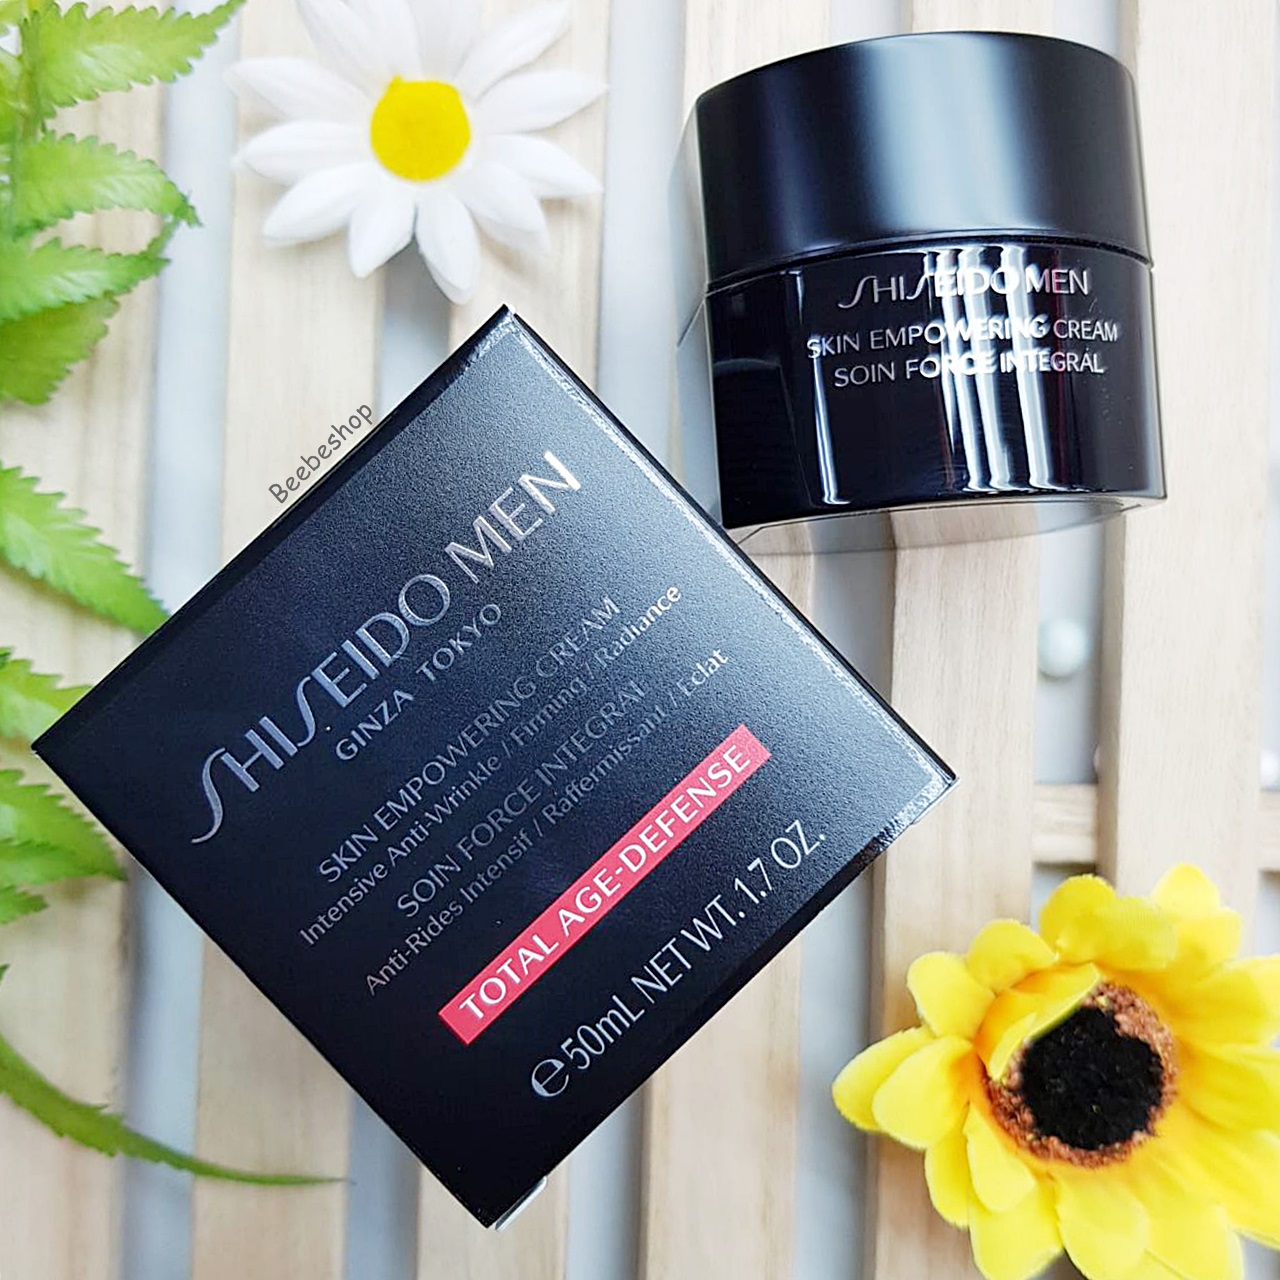 Shiseido Men Skin Empowering Cream 50ml ฟื้นบำรุงผิว ผลิต 12/2019